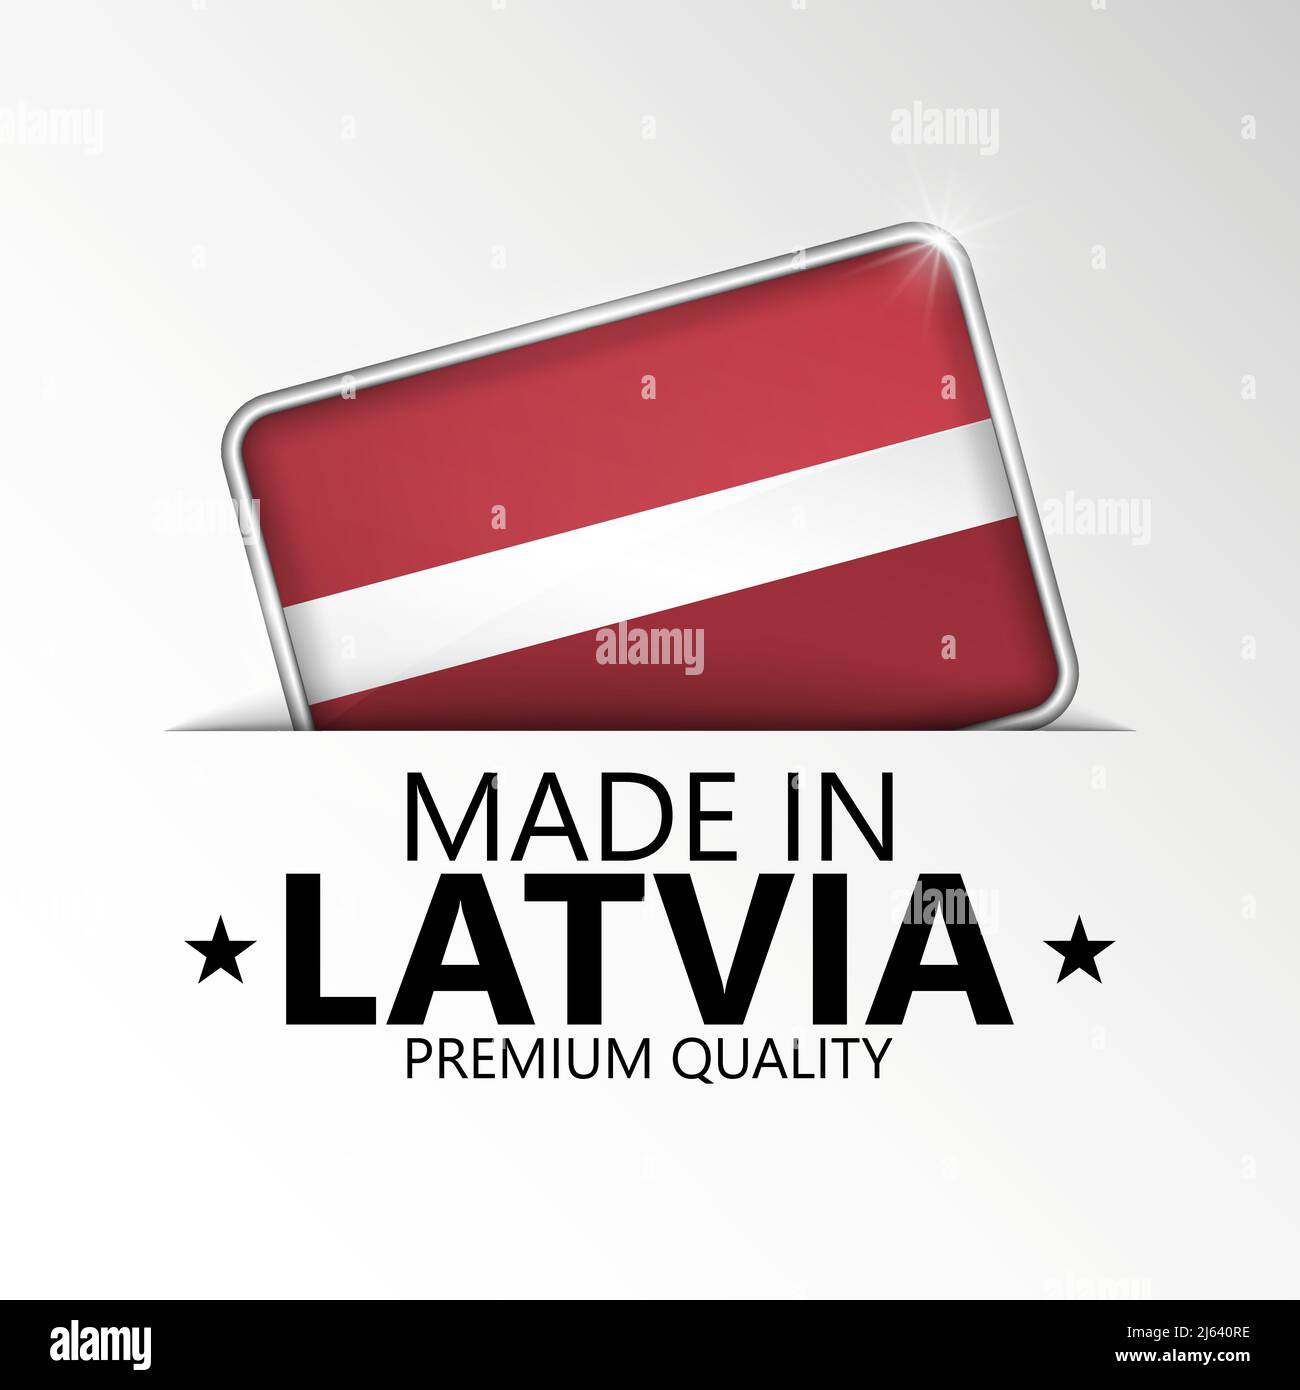 Realizzato in Lettonia con grafica ed etichetta. Elemento di impatto per l'uso che si desidera fare di esso. Illustrazione Vettoriale